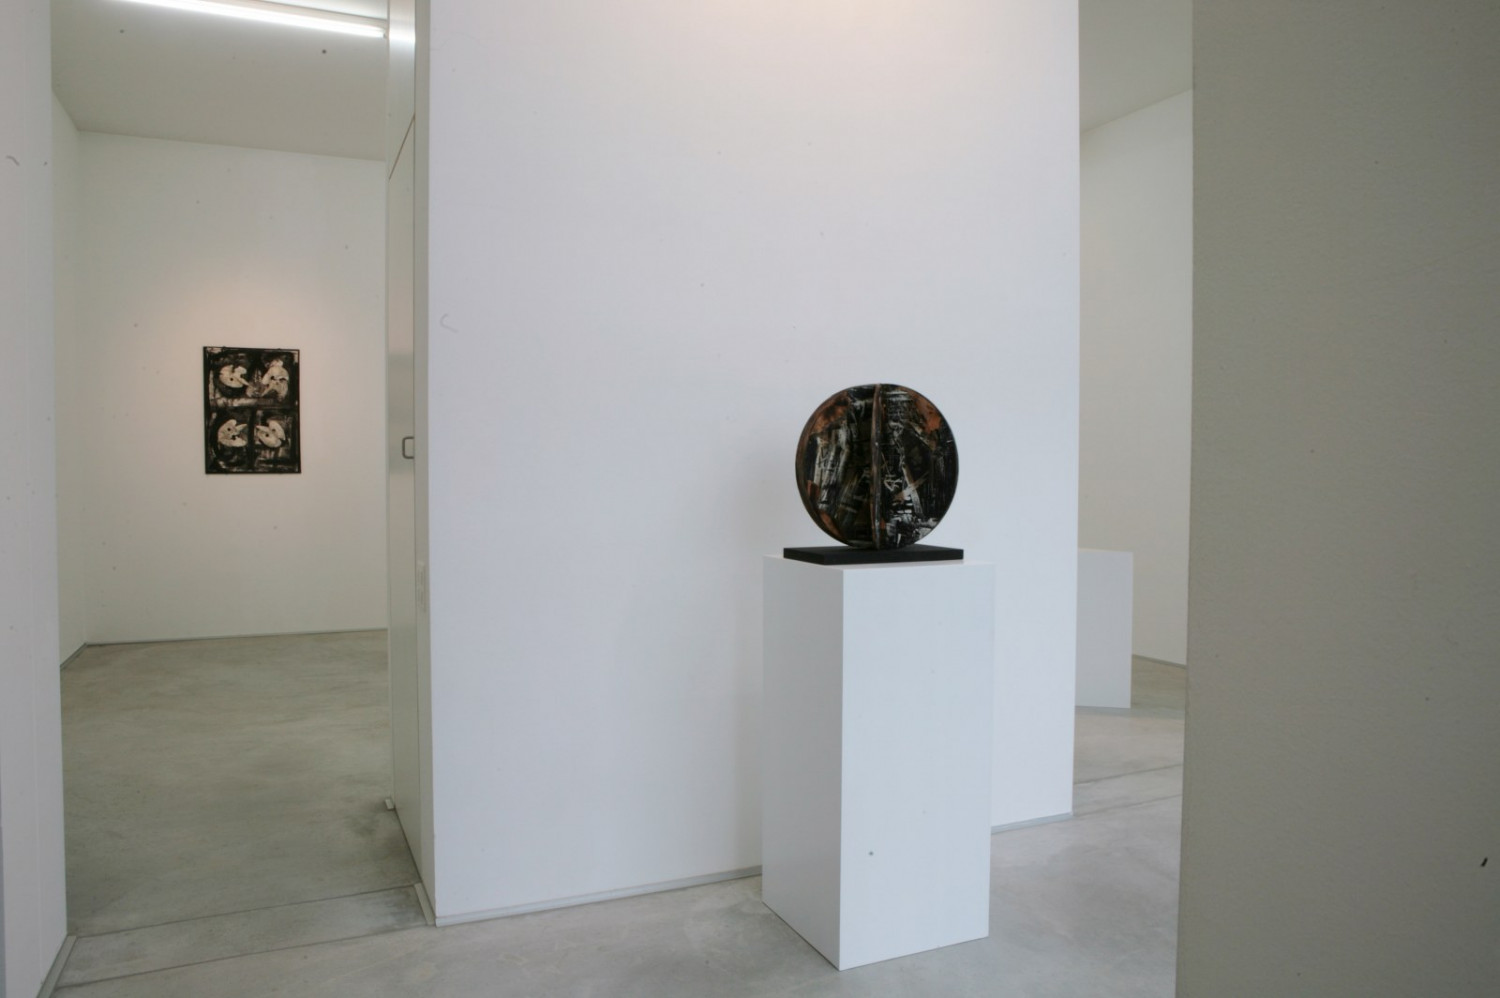 Emilio Vedova, ‘Piccole sculture 1970-1990’, Installation view, Buchmann Agra